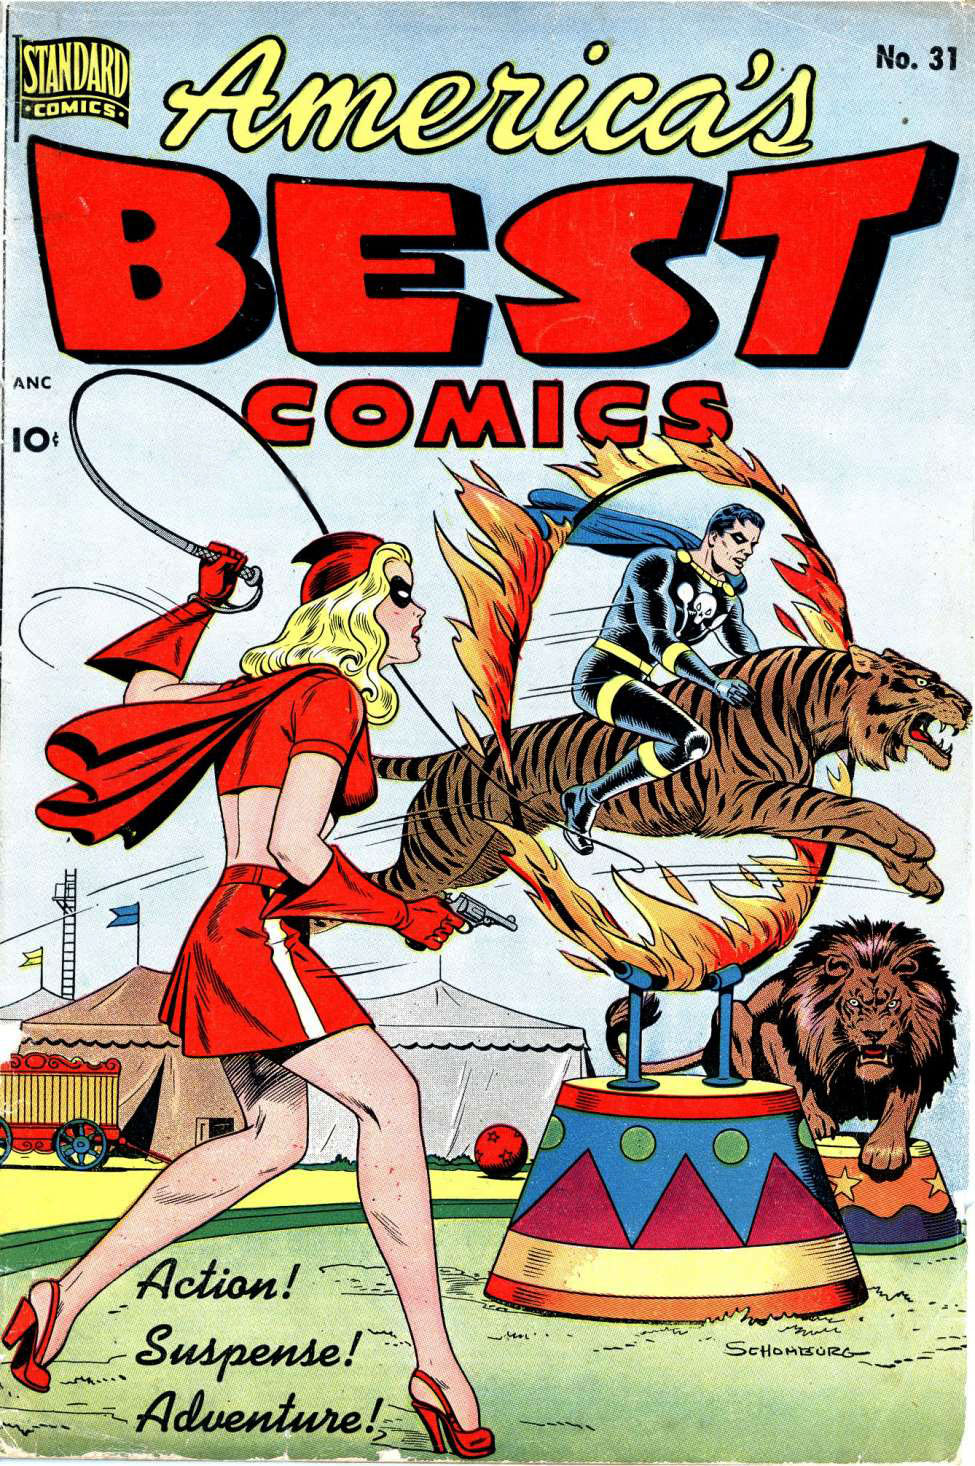 America's Best Comics #31, Standard Comics